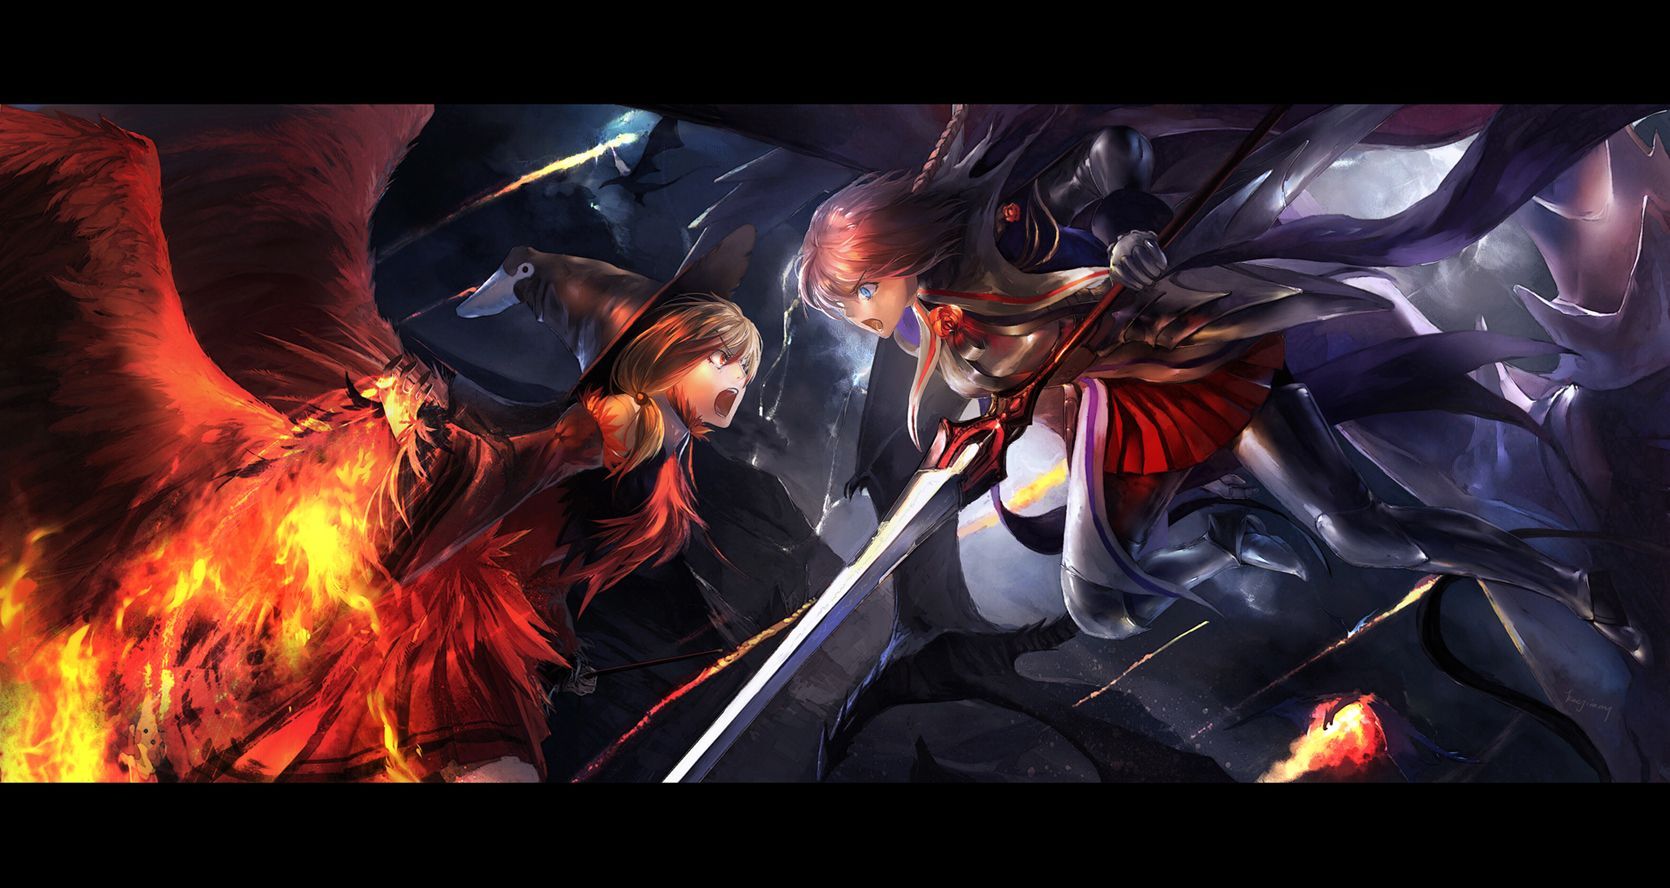 Anime Battle Wallpaper Free Anime Battle Background